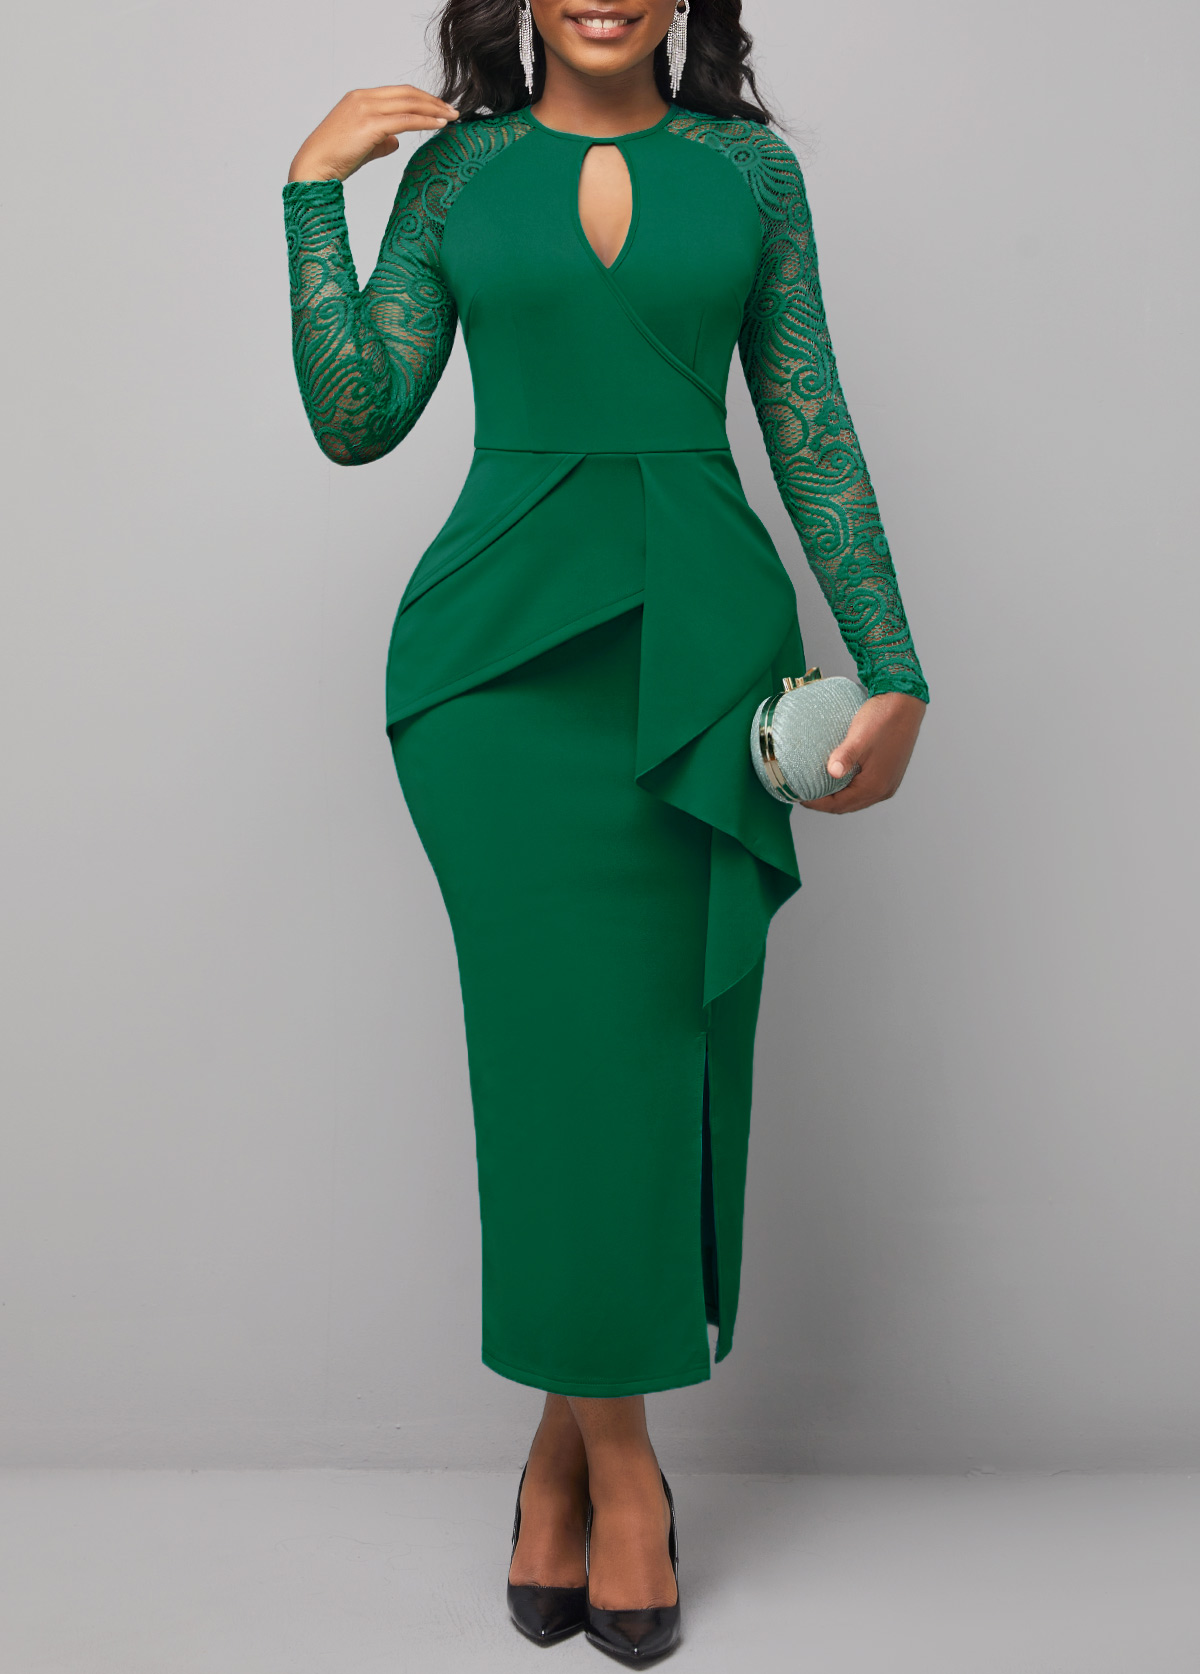 Flounce Cutout Detail Lace Stitching Green Dress